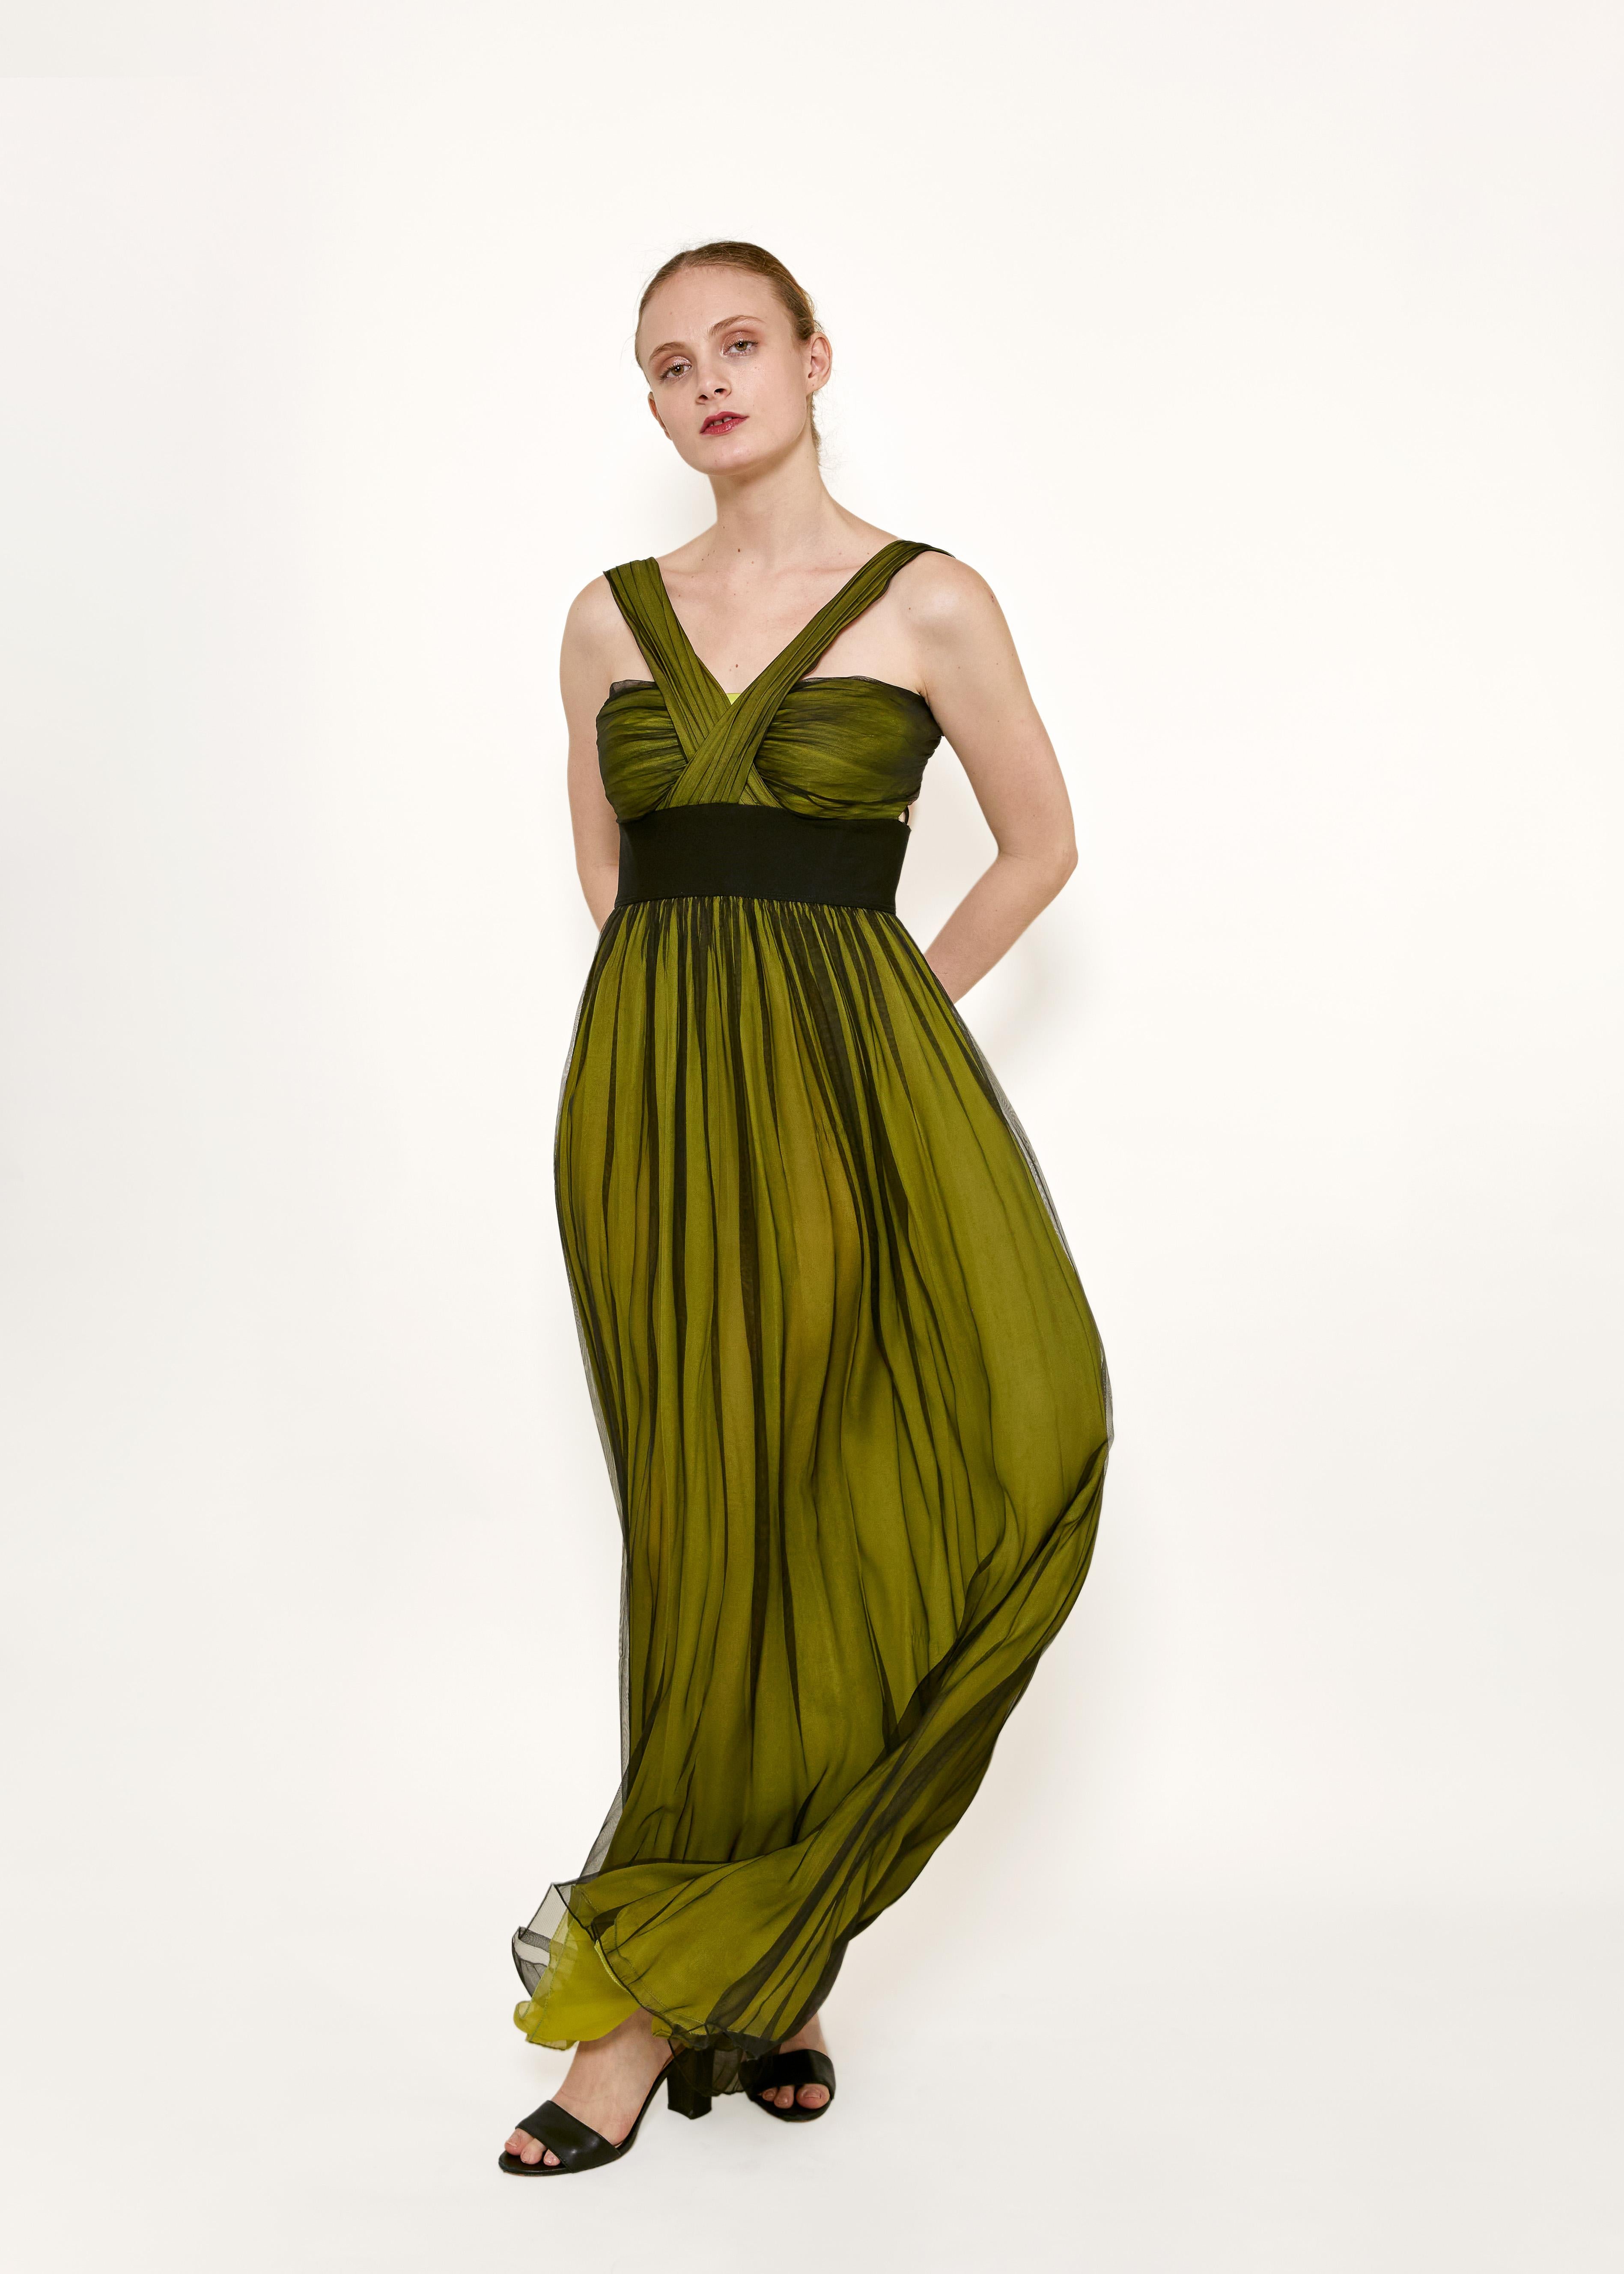 Erhöhen Sie Ihren Abendlook mit diesem atemberaubenden Dolce & Gabbana Grün/Schwarz Cross-Front Chiffon Kleid. Dieses Kleid aus mehrlagigem Seidenchiffon strahlt Luxus und Raffinesse aus. Das einzigartige Cross-Front-Design verleiht ihm einen Hauch